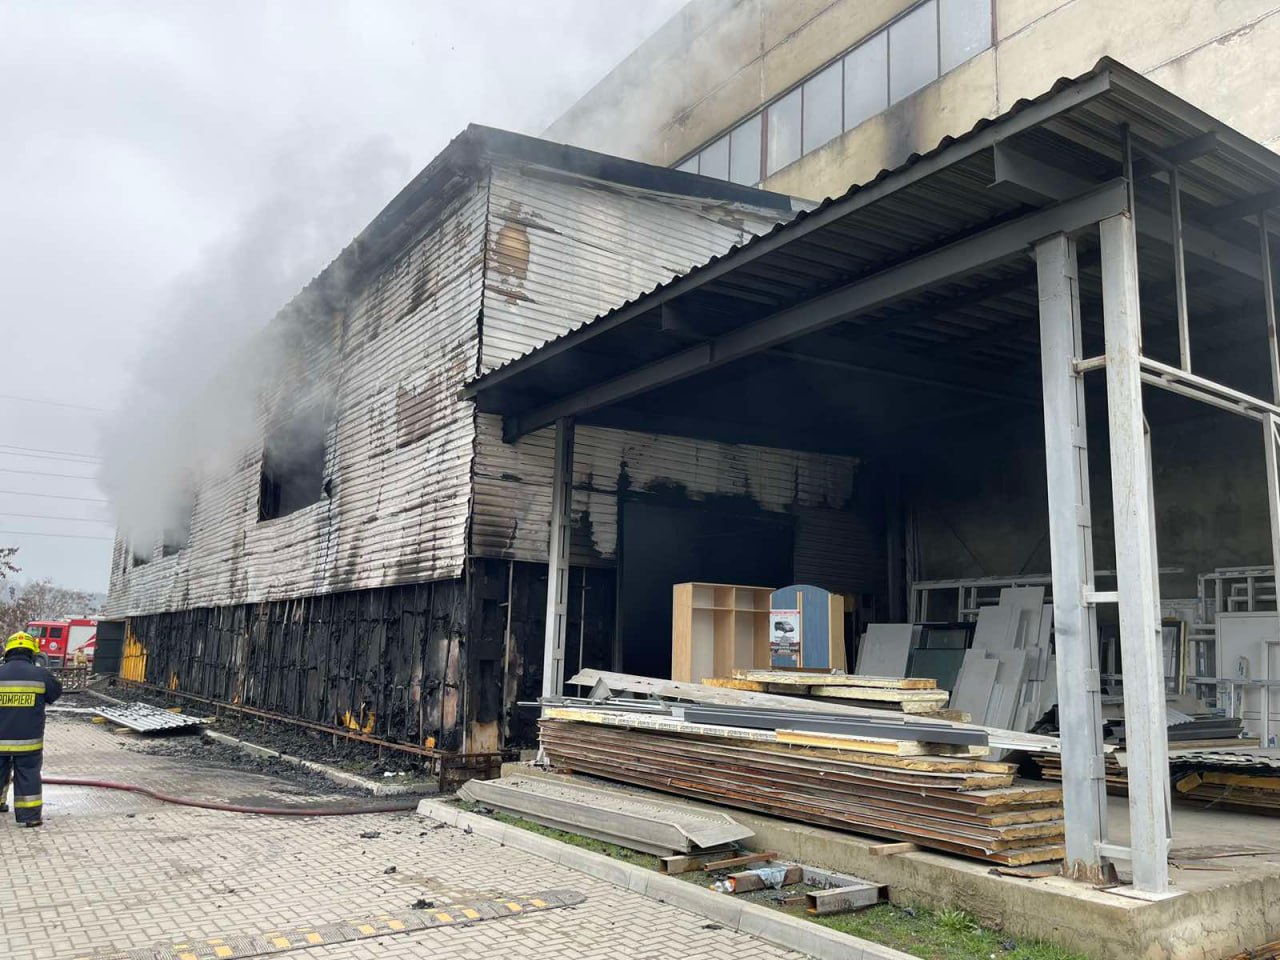 (ФОТО, ВИДЕО) Крупный пожар в Кишиневе. Загорелся склад с техникой